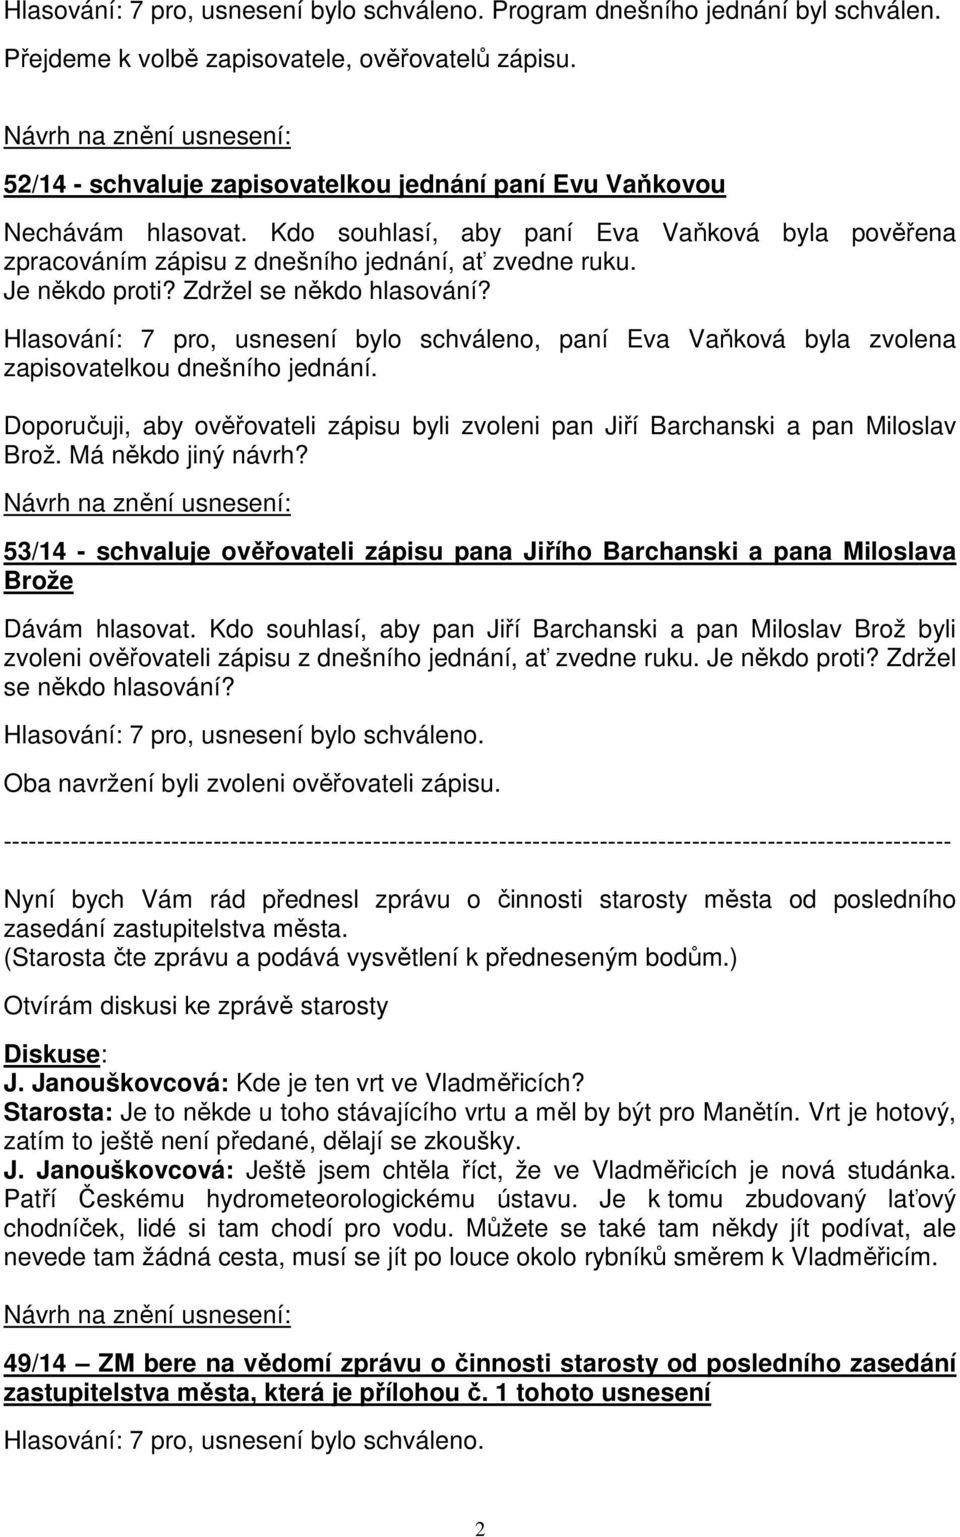 Hlasování: 7 pro, usnesení bylo schváleno, paní Eva Vaňková byla zvolena zapisovatelkou dnešního jednání. Doporučuji, aby ověřovateli zápisu byli zvoleni pan Jiří Barchanski a pan Miloslav Brož.